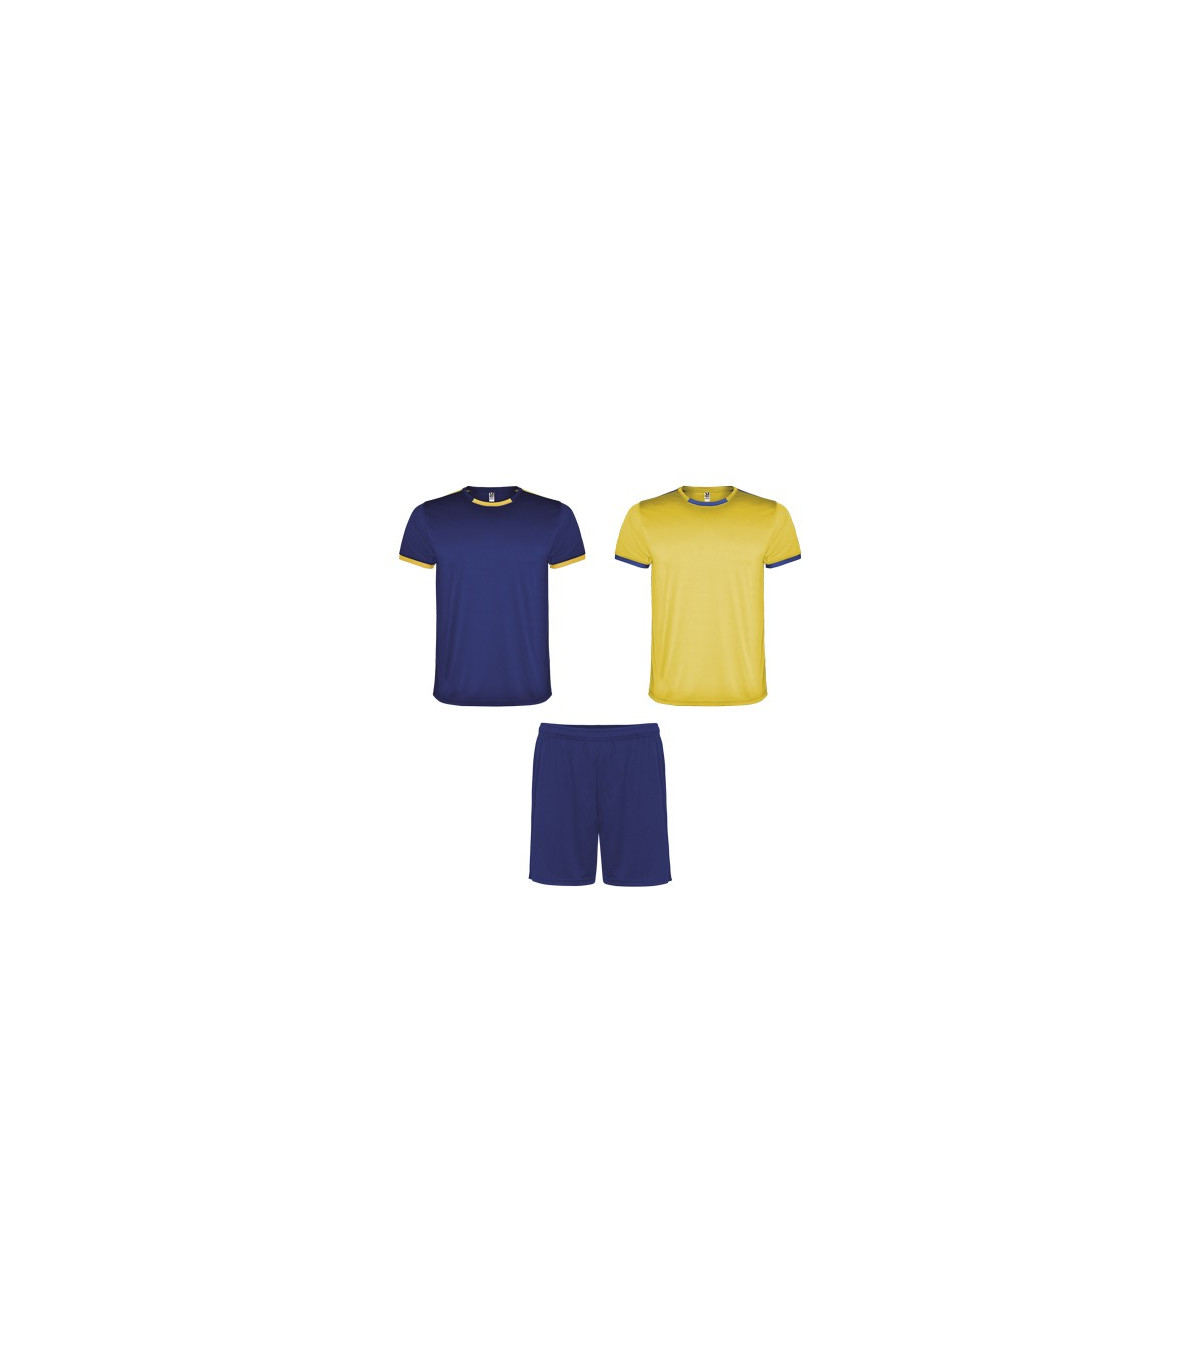 Conjunto deportivo united compuesto por camiseta y pantalón